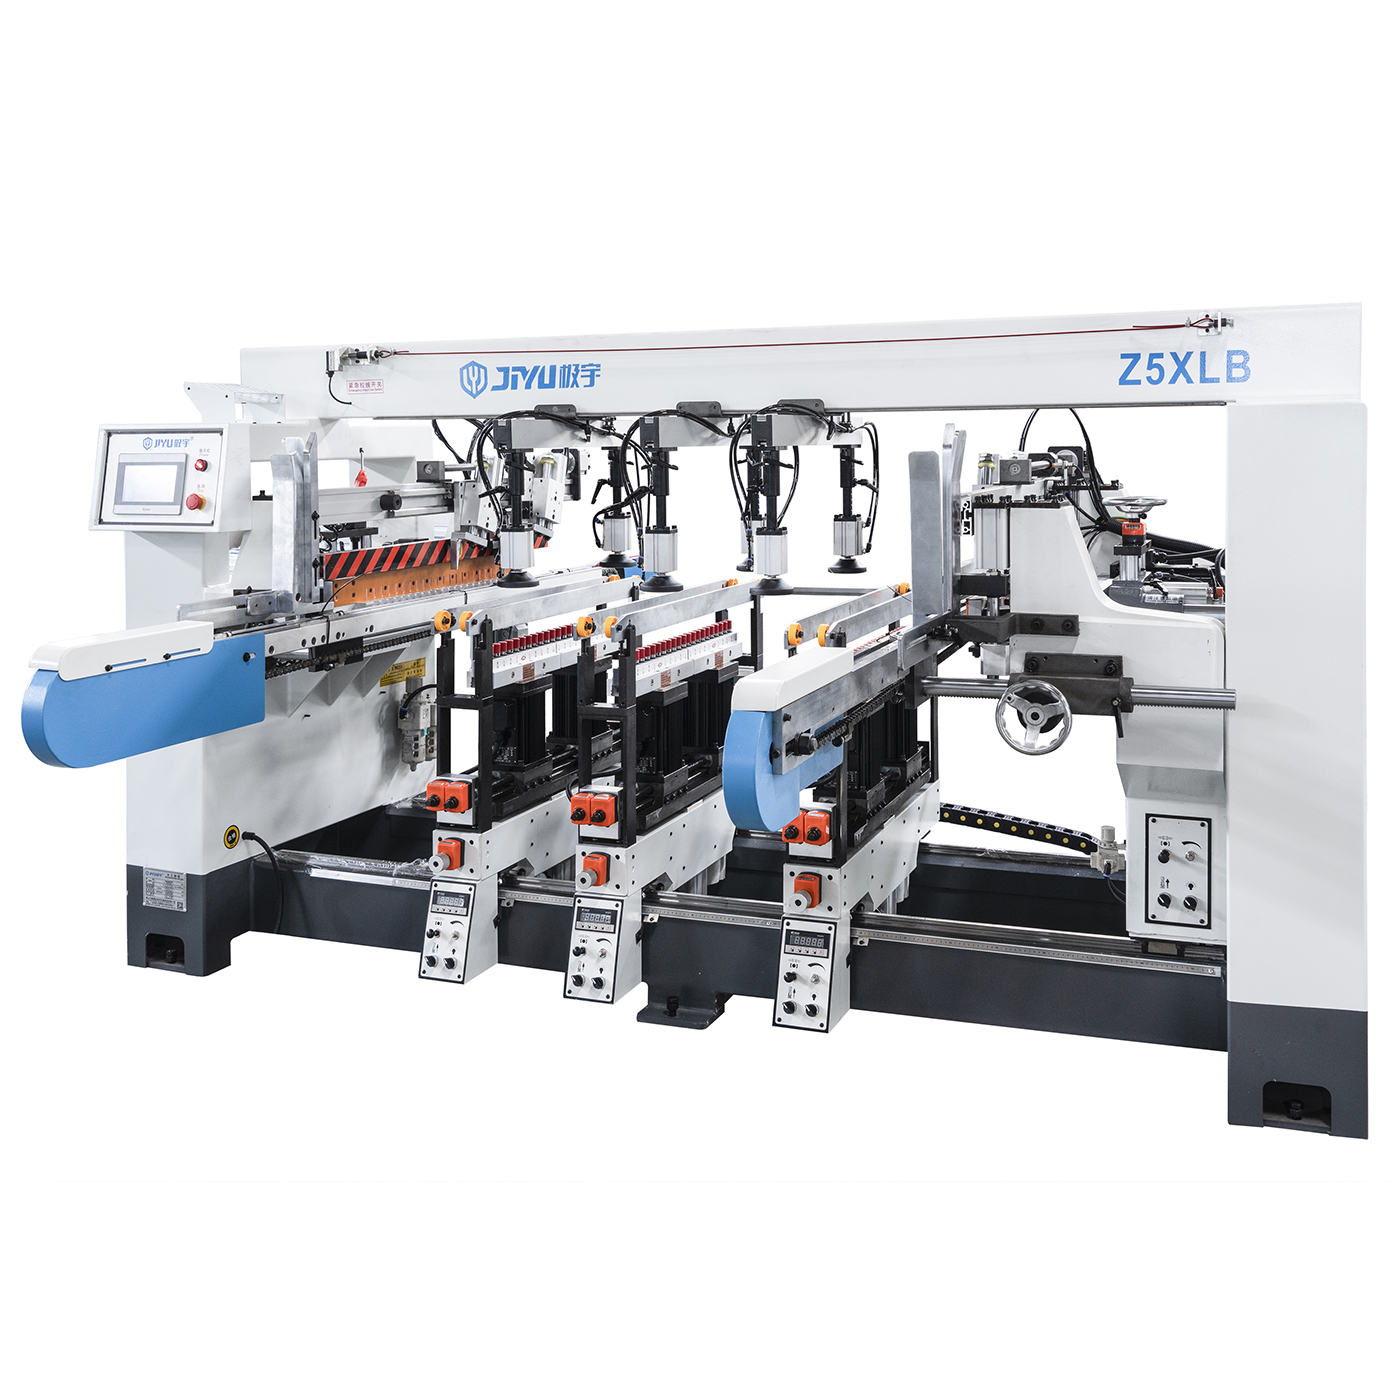 Z5XLB स्वचालित पांच पंक्तियों वाली बोरिंग मशीन